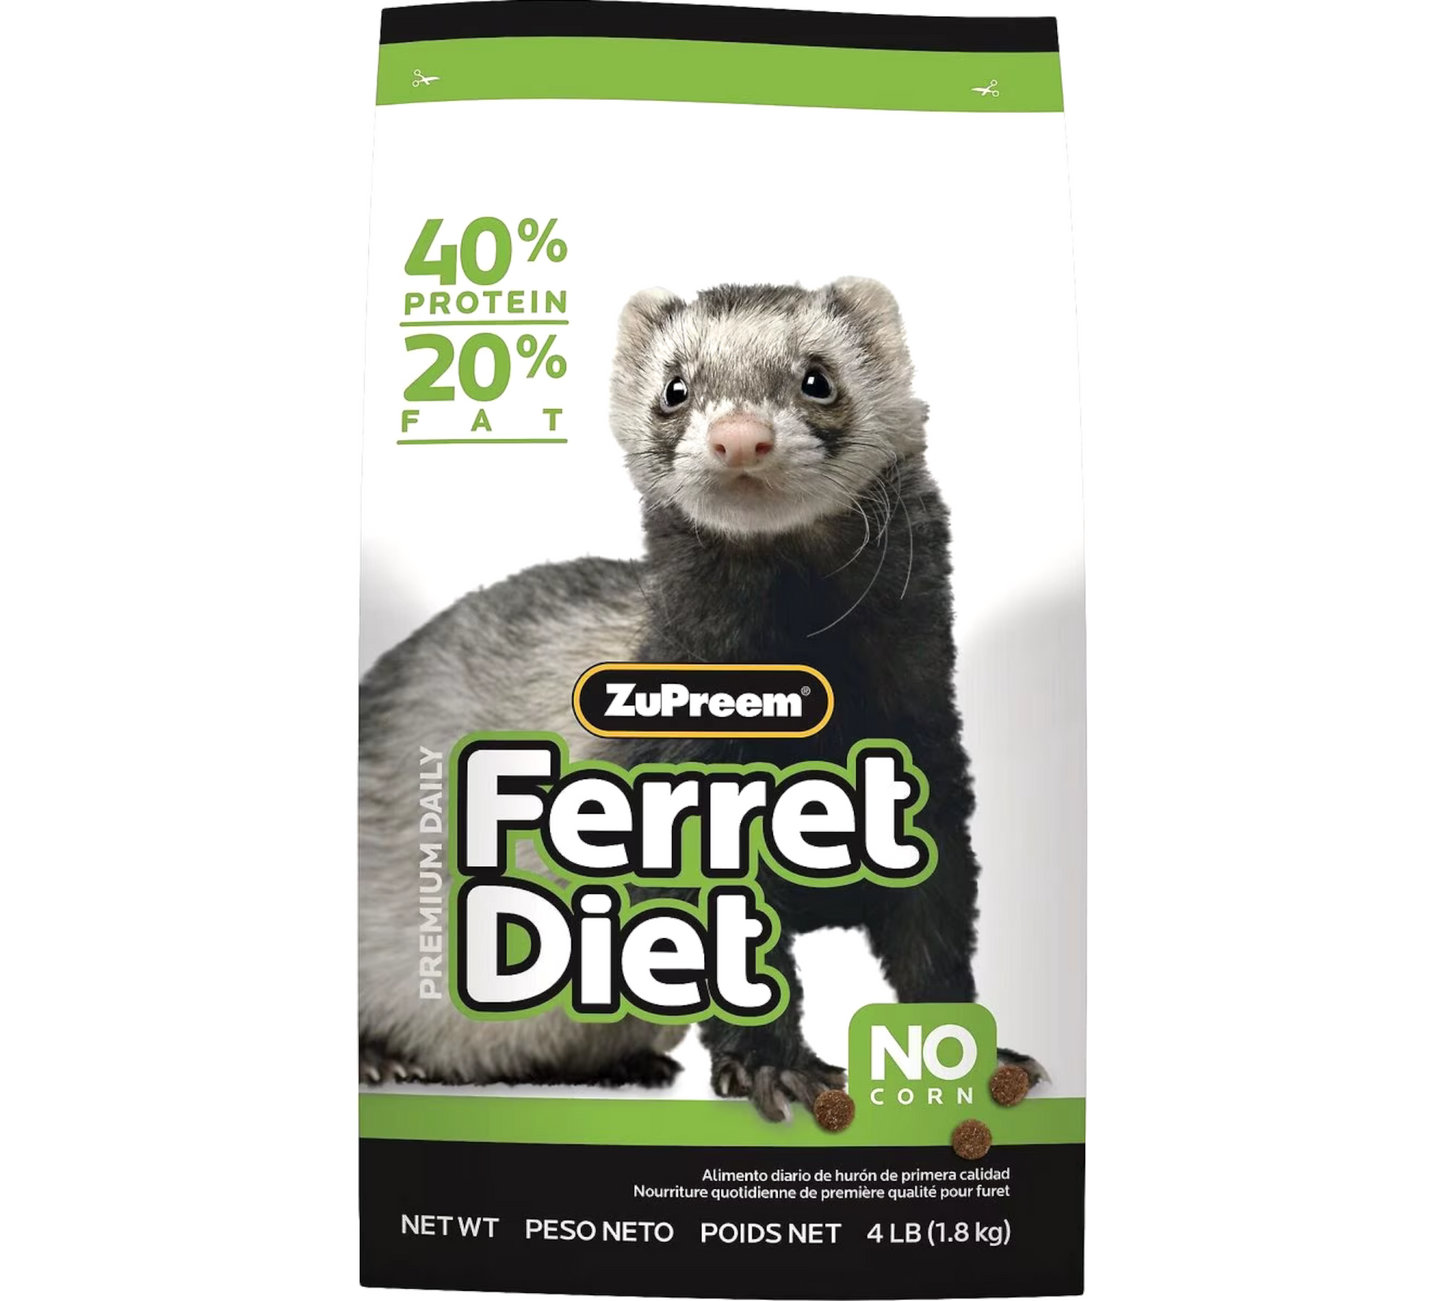 ZuPreem Premium Corn-Free Daily Diet Ferret Food, 4-lb